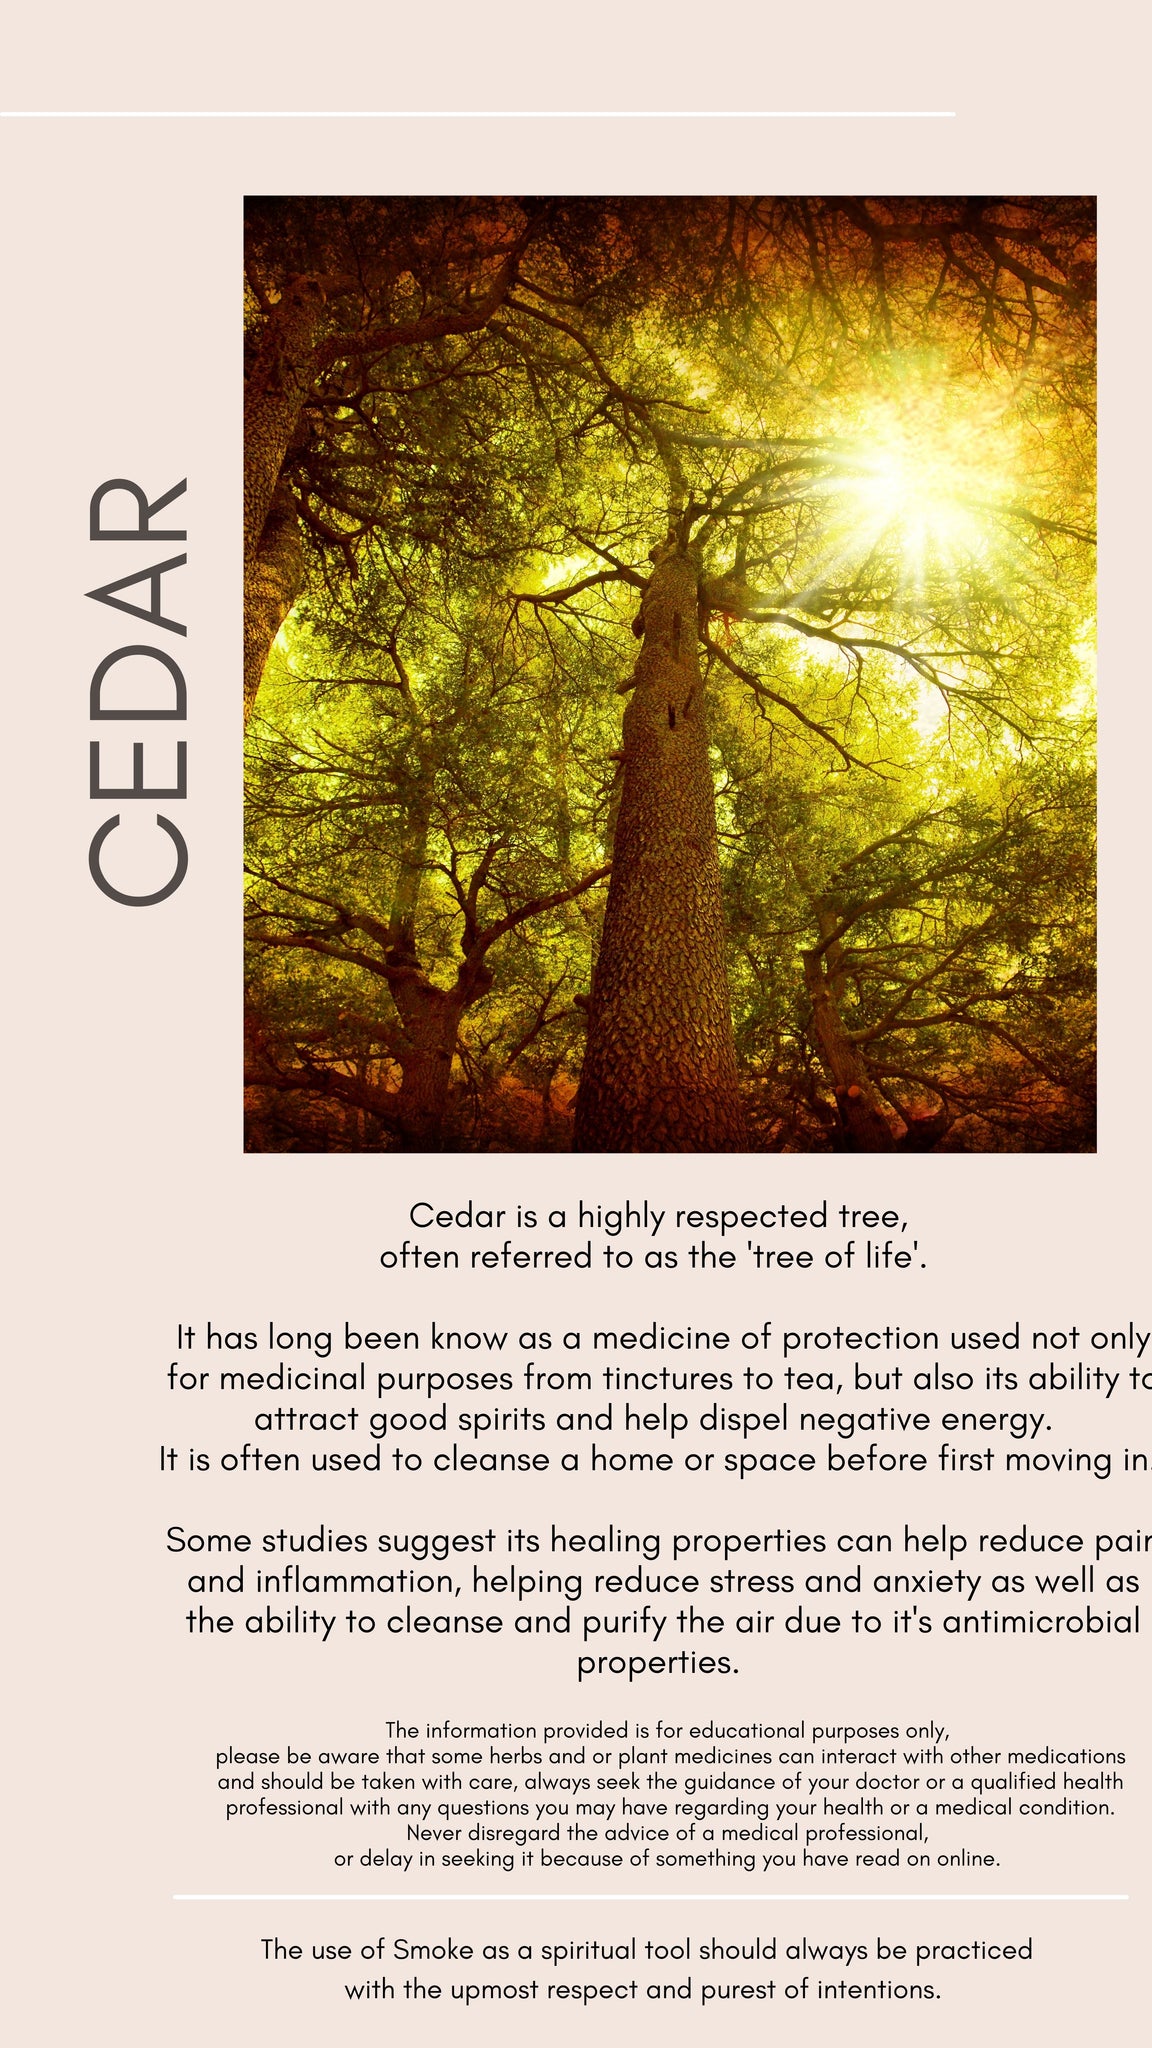 cedar and it's medicinal benefits 